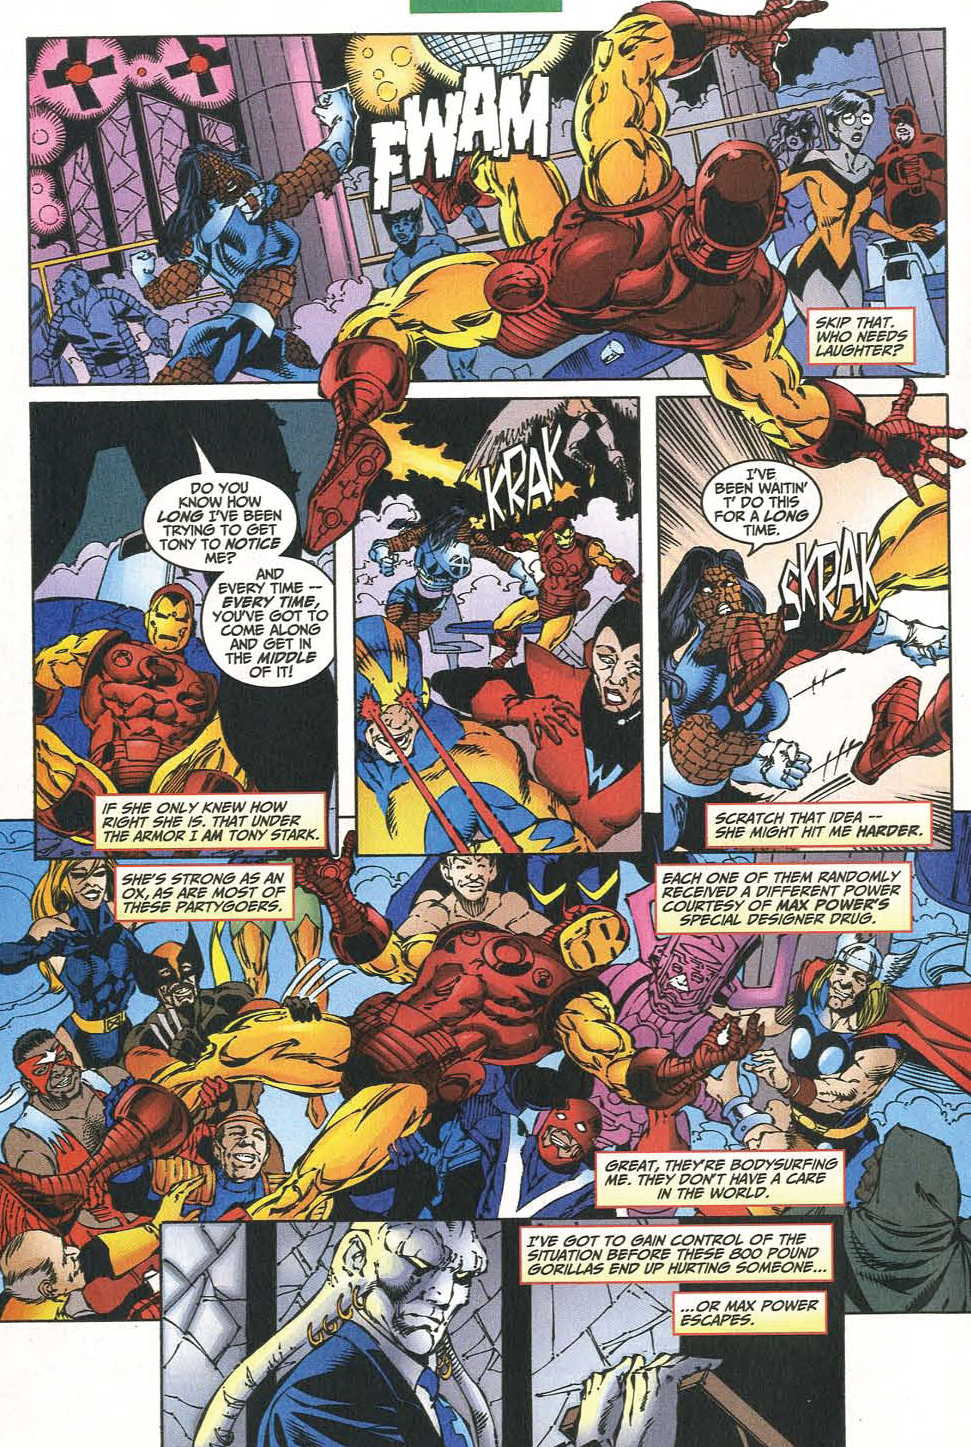 Iron Man (1998) 34 Page 3